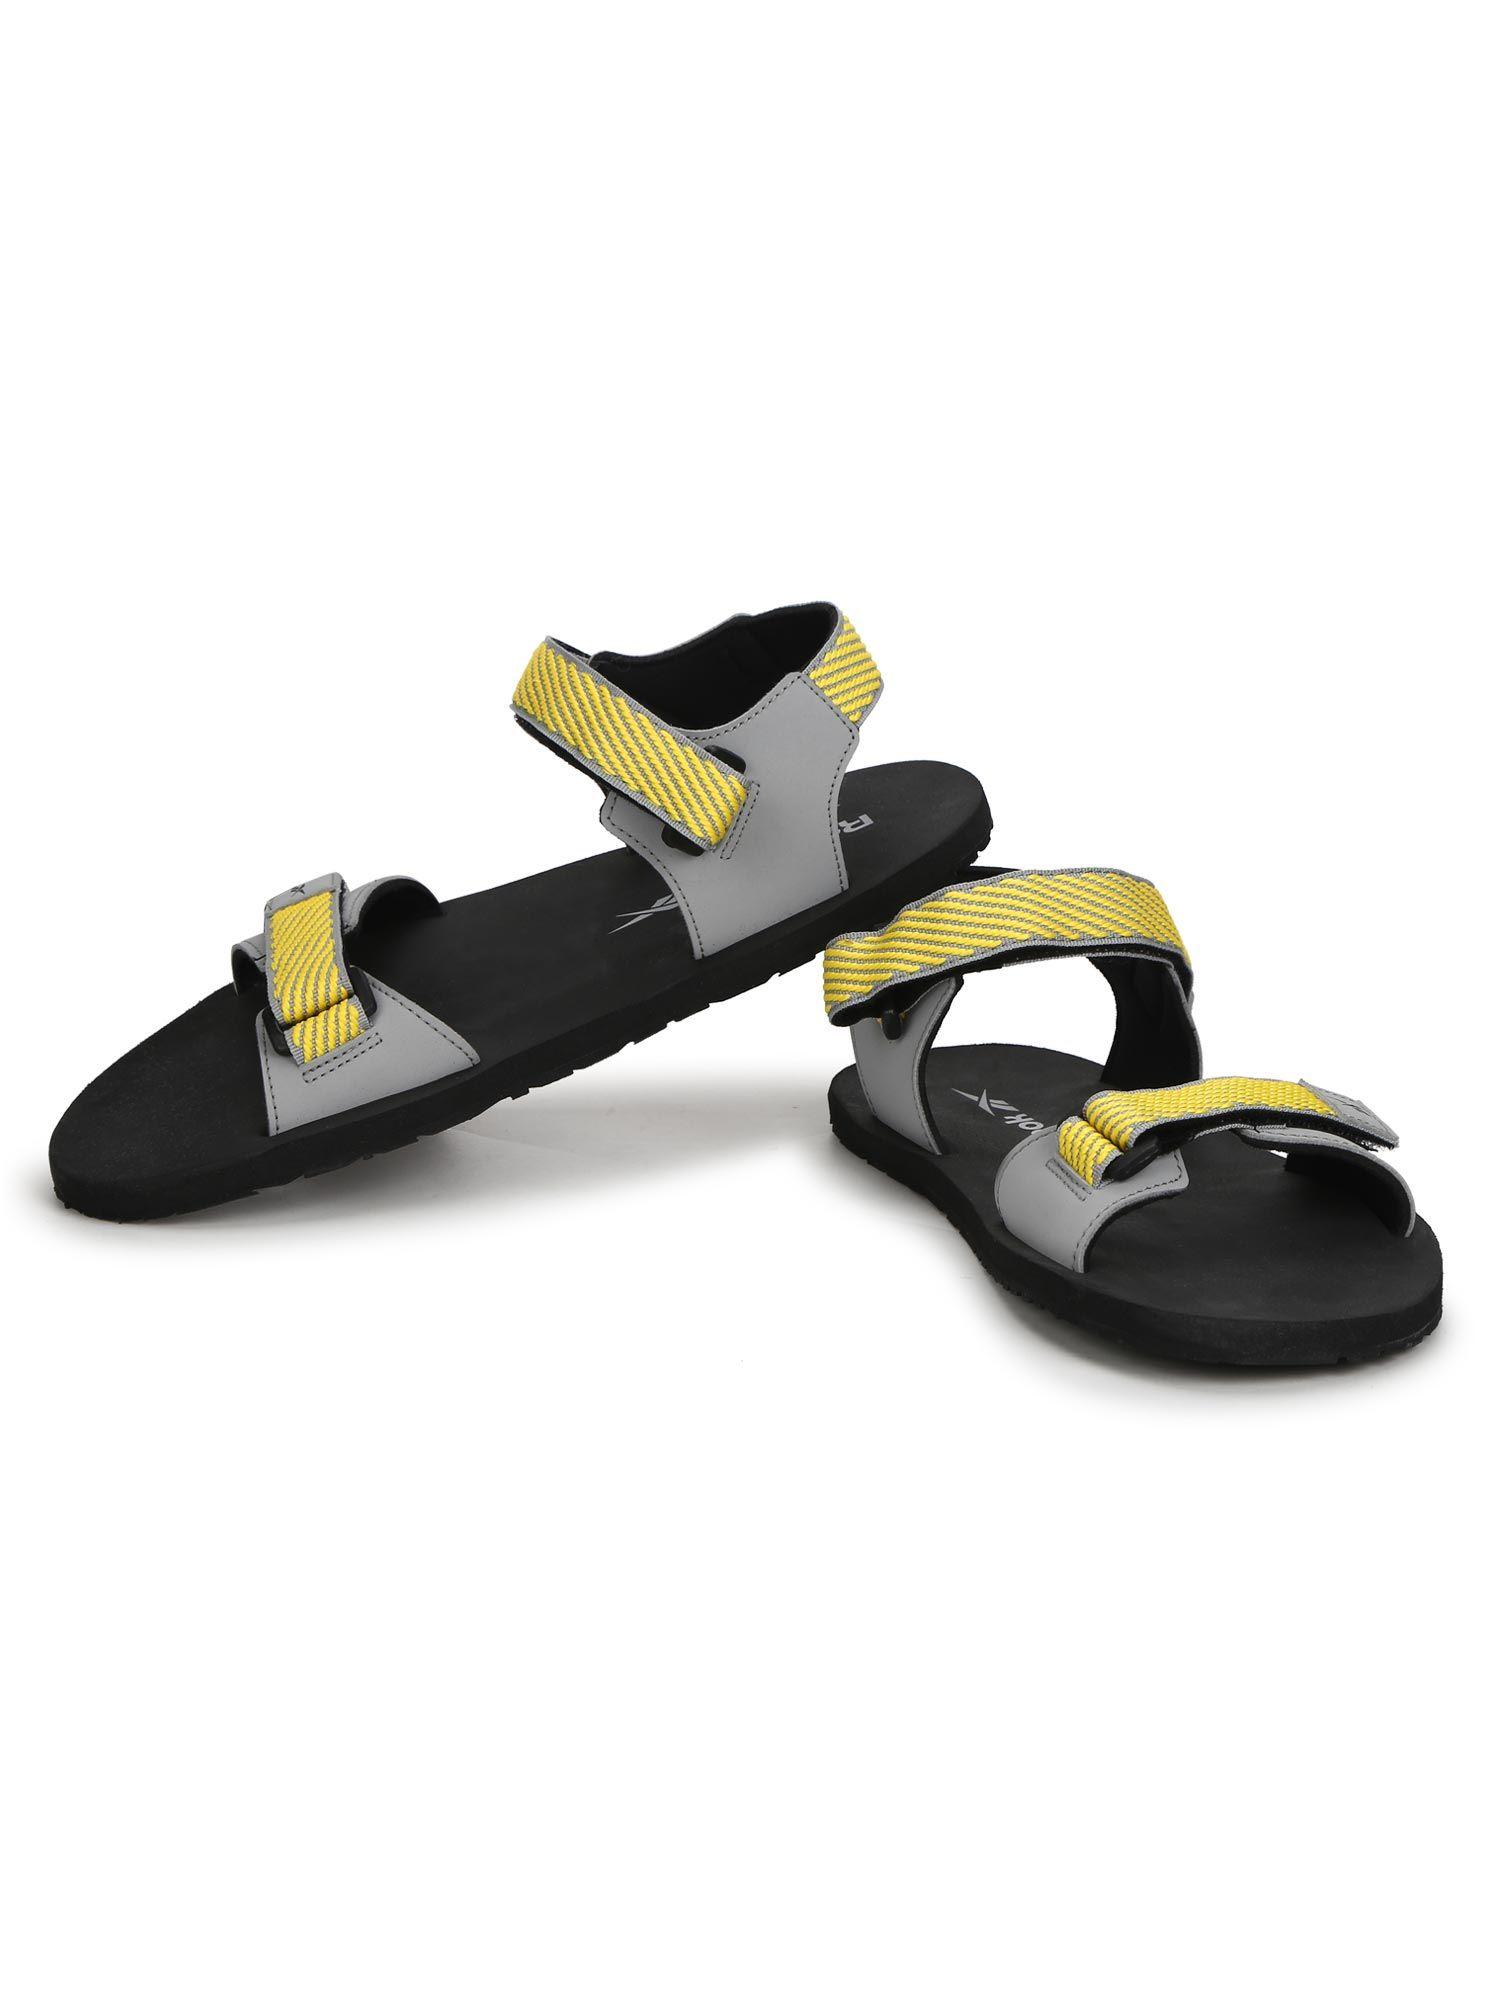 epic sandal pro grey swim sandal